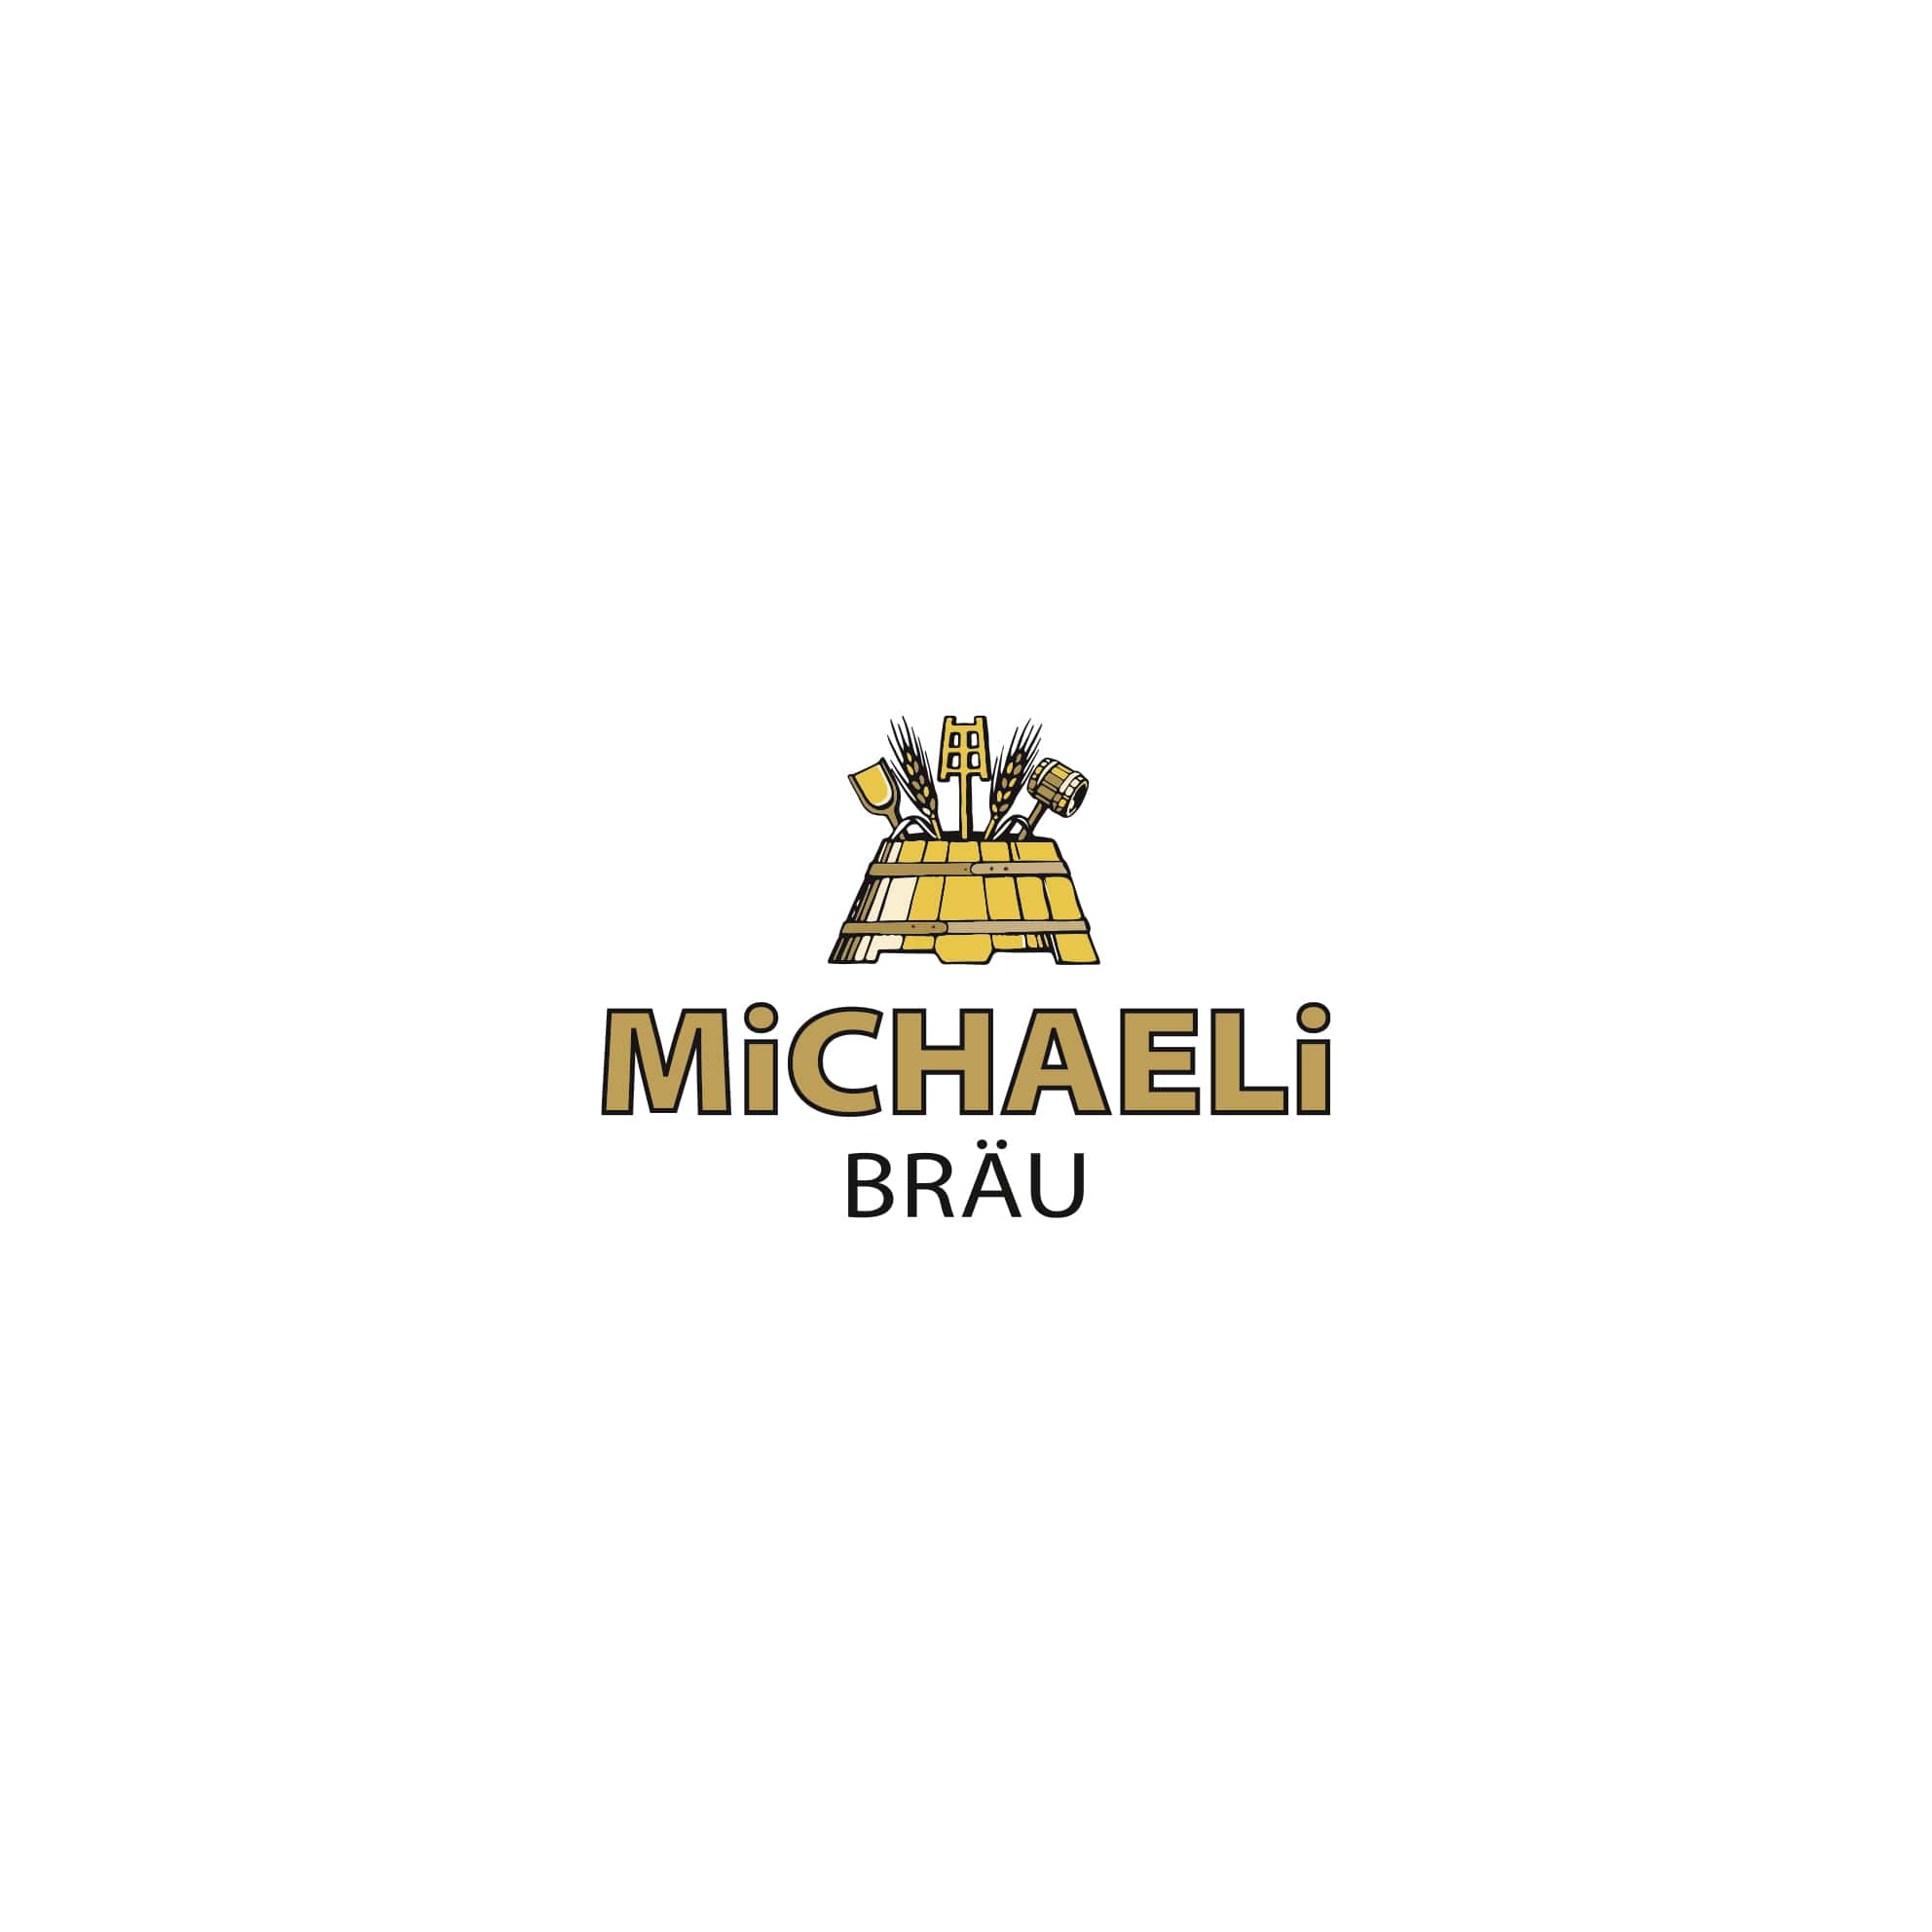 Michaeli Bräu - Logoentwicklung und Farbkonzept